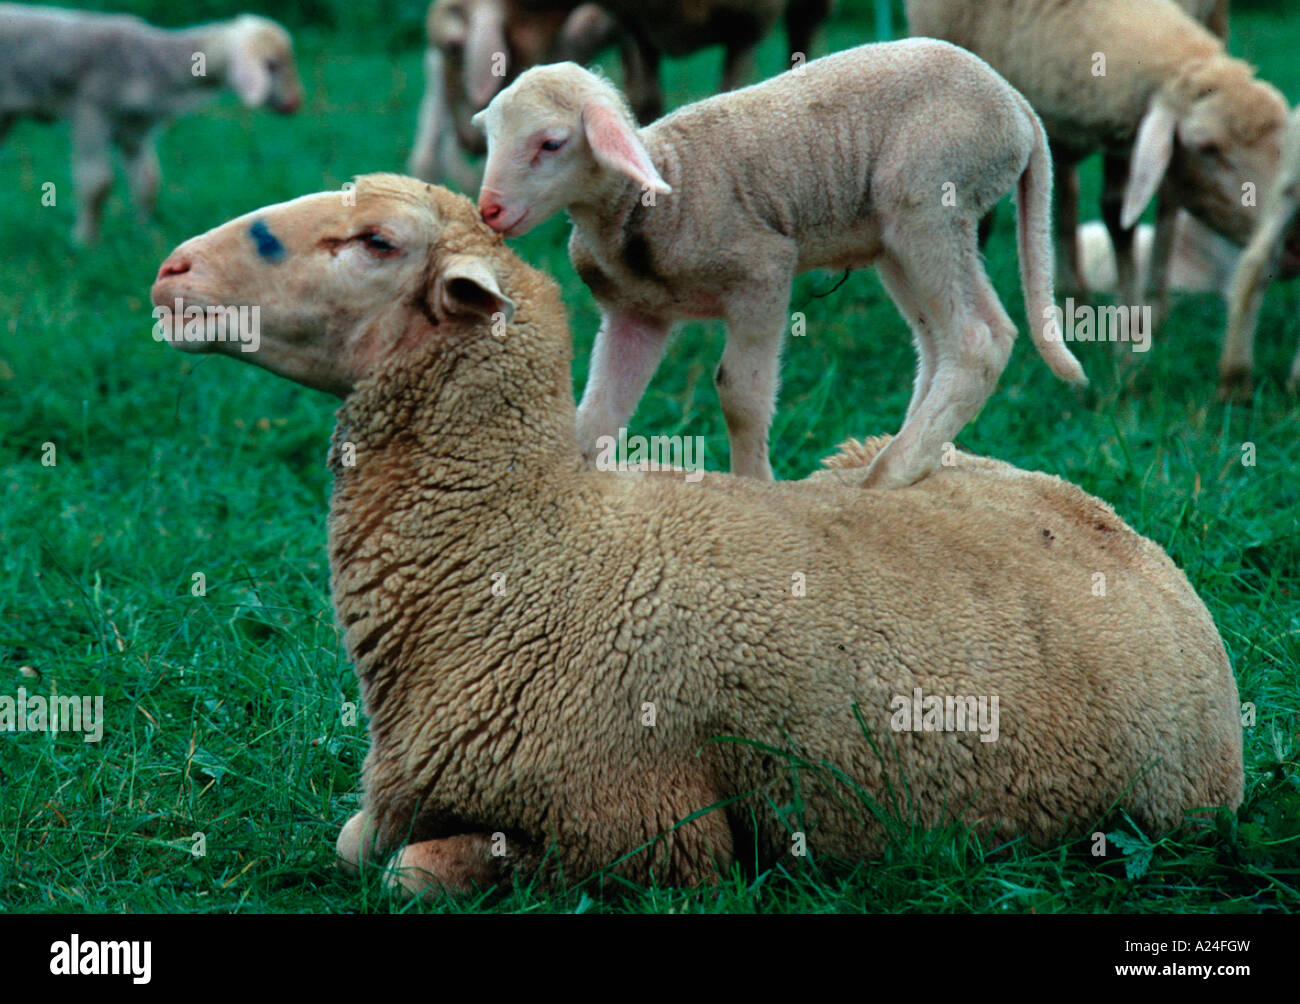 Schafe Lämmchen klettert auf Rücken vom Mutterschaf Schwäbische Alb Deutschland Foto Stock